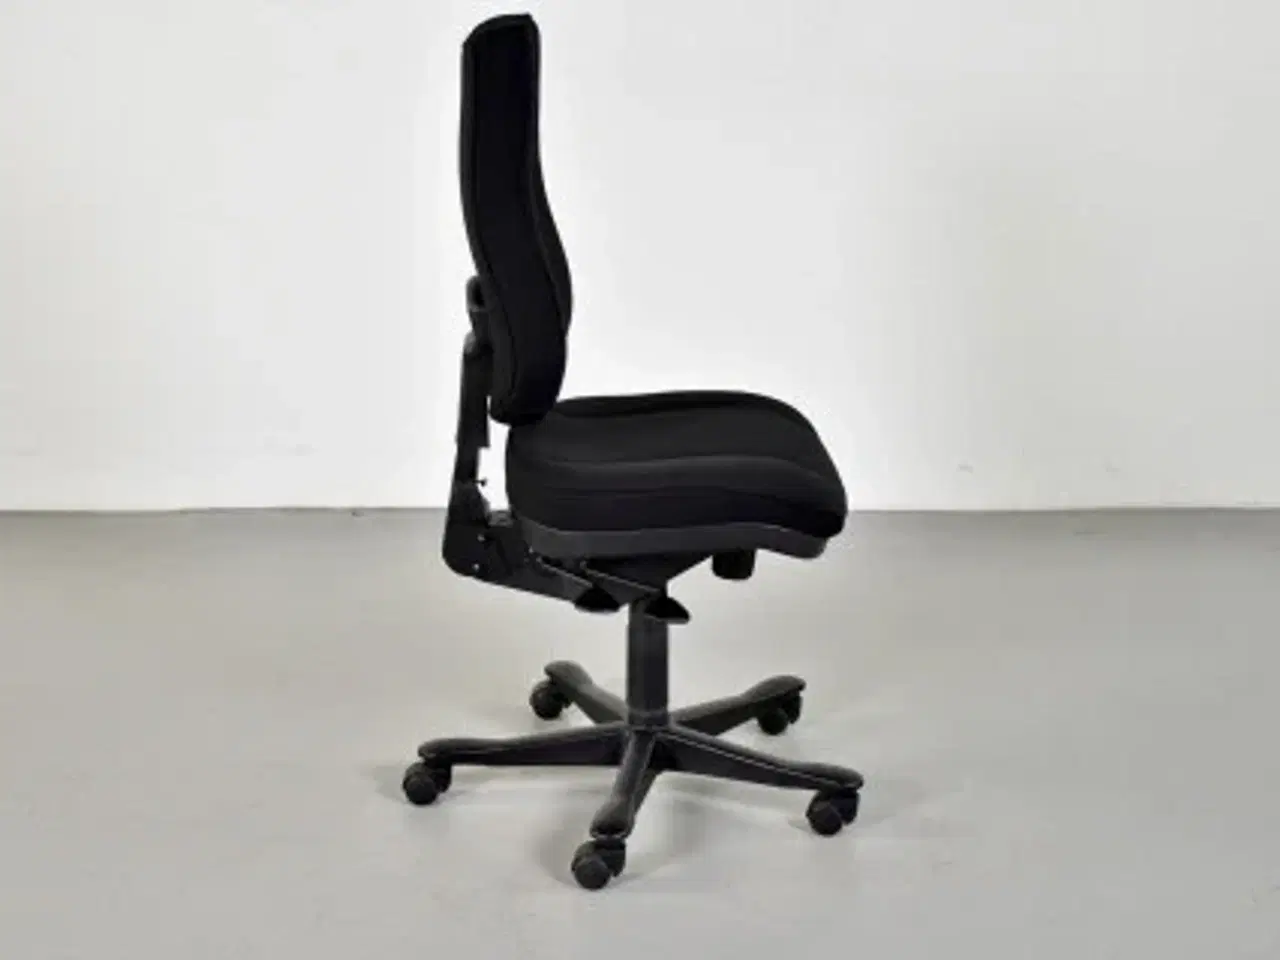 Billede 4 - Rbm model 800 kontorstol med høj ryg og nyt sort polster